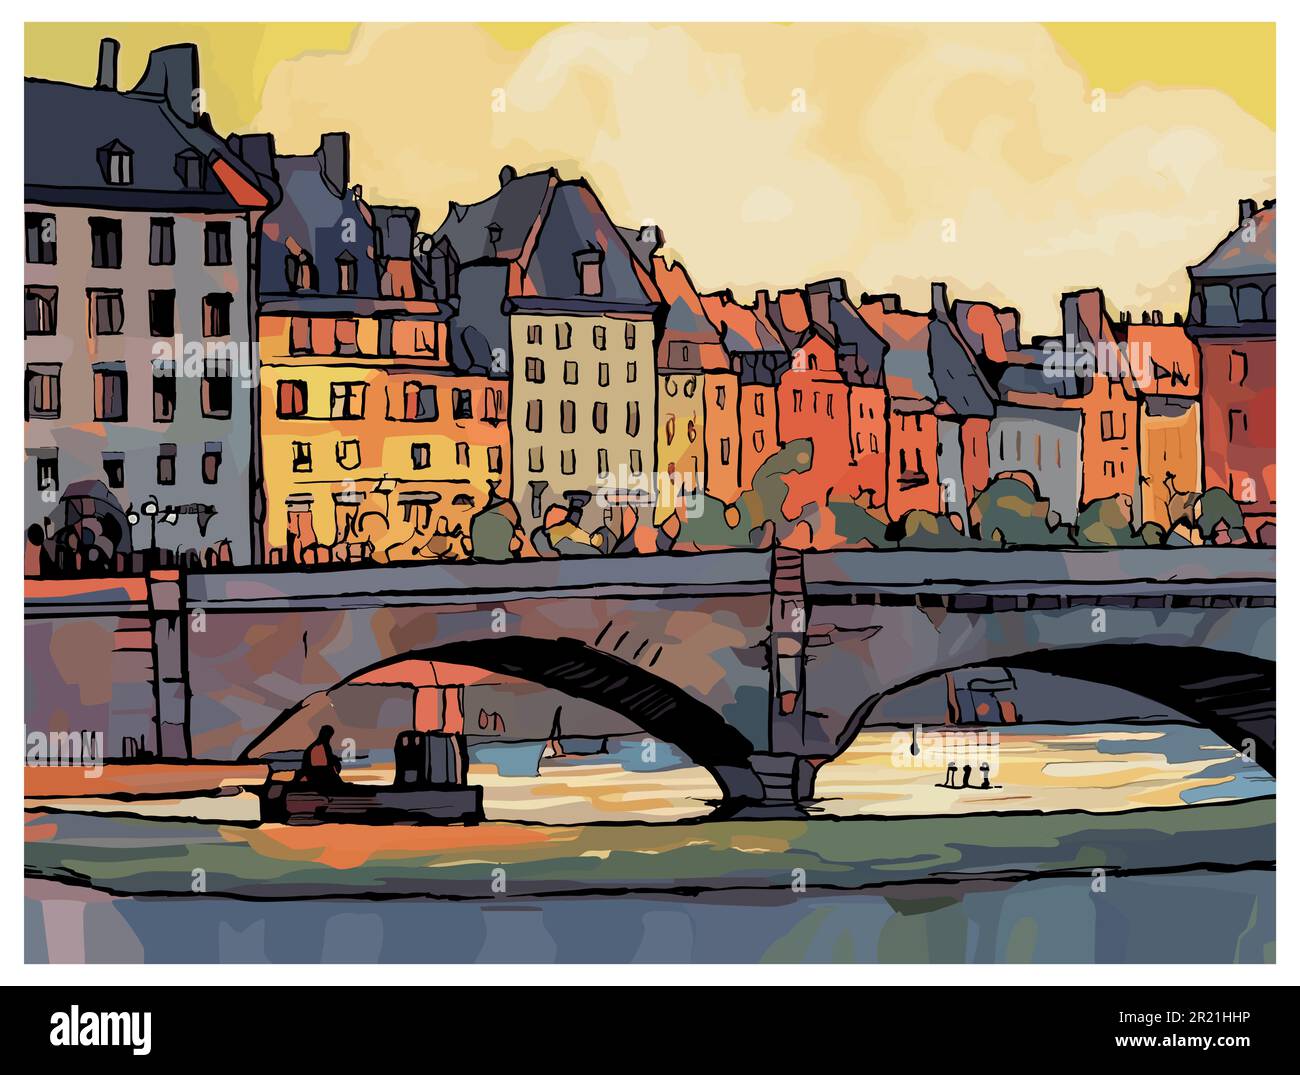 Originale rappresentazione colorata di Pont Neuf e la Senna a Parigi, Francia - illustrazione vettoriale (ideale per la stampa, poster o carta da parati, hou Illustrazione Vettoriale